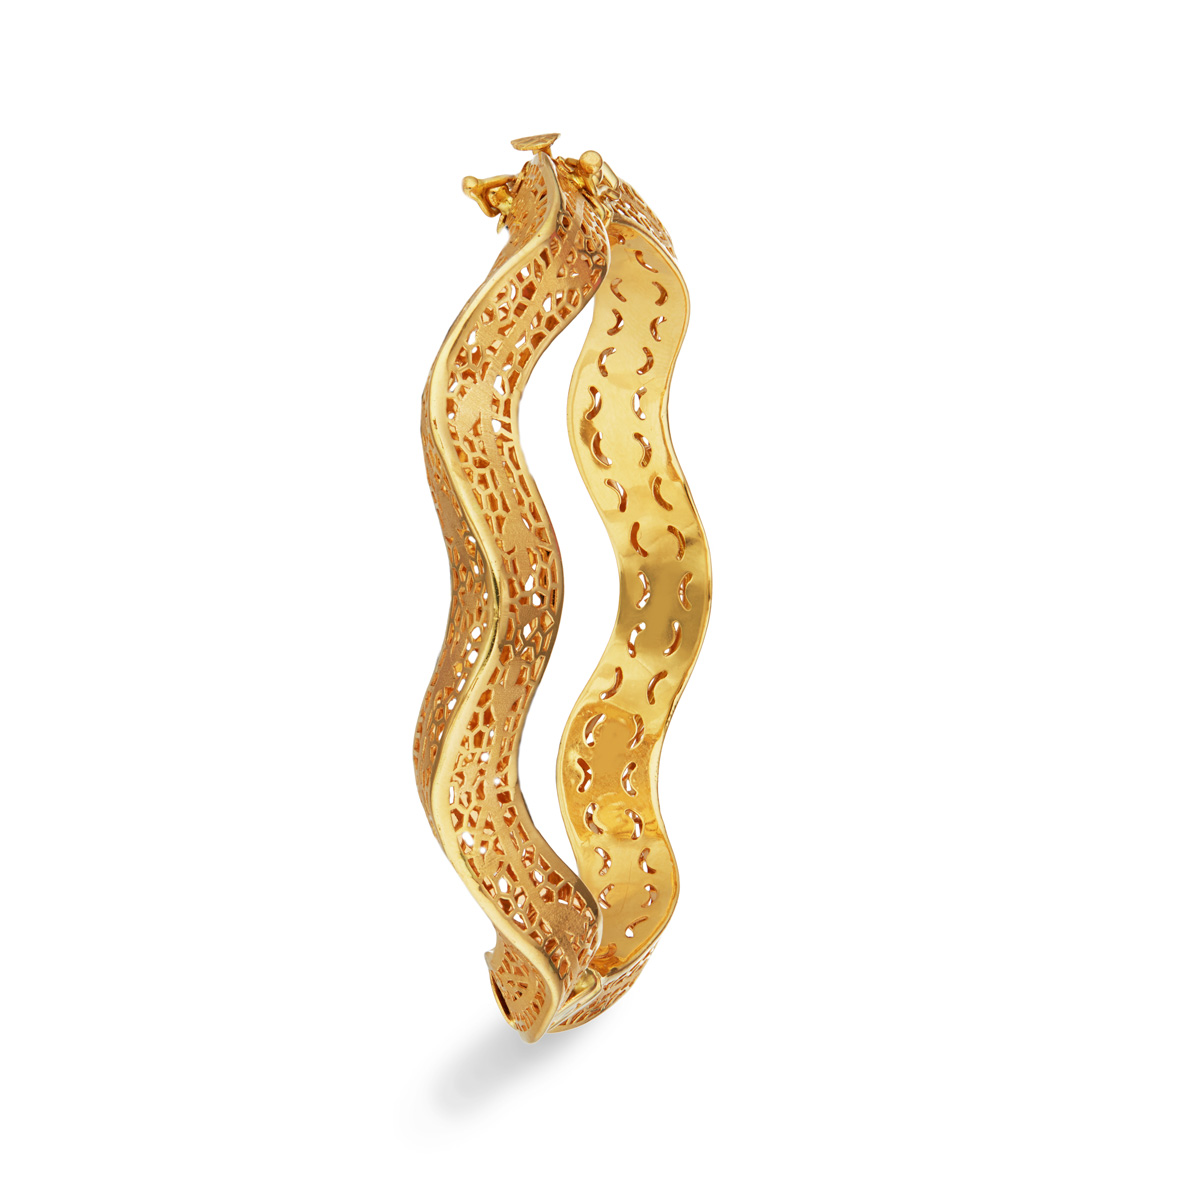 The Vasudha Gold Bracelet